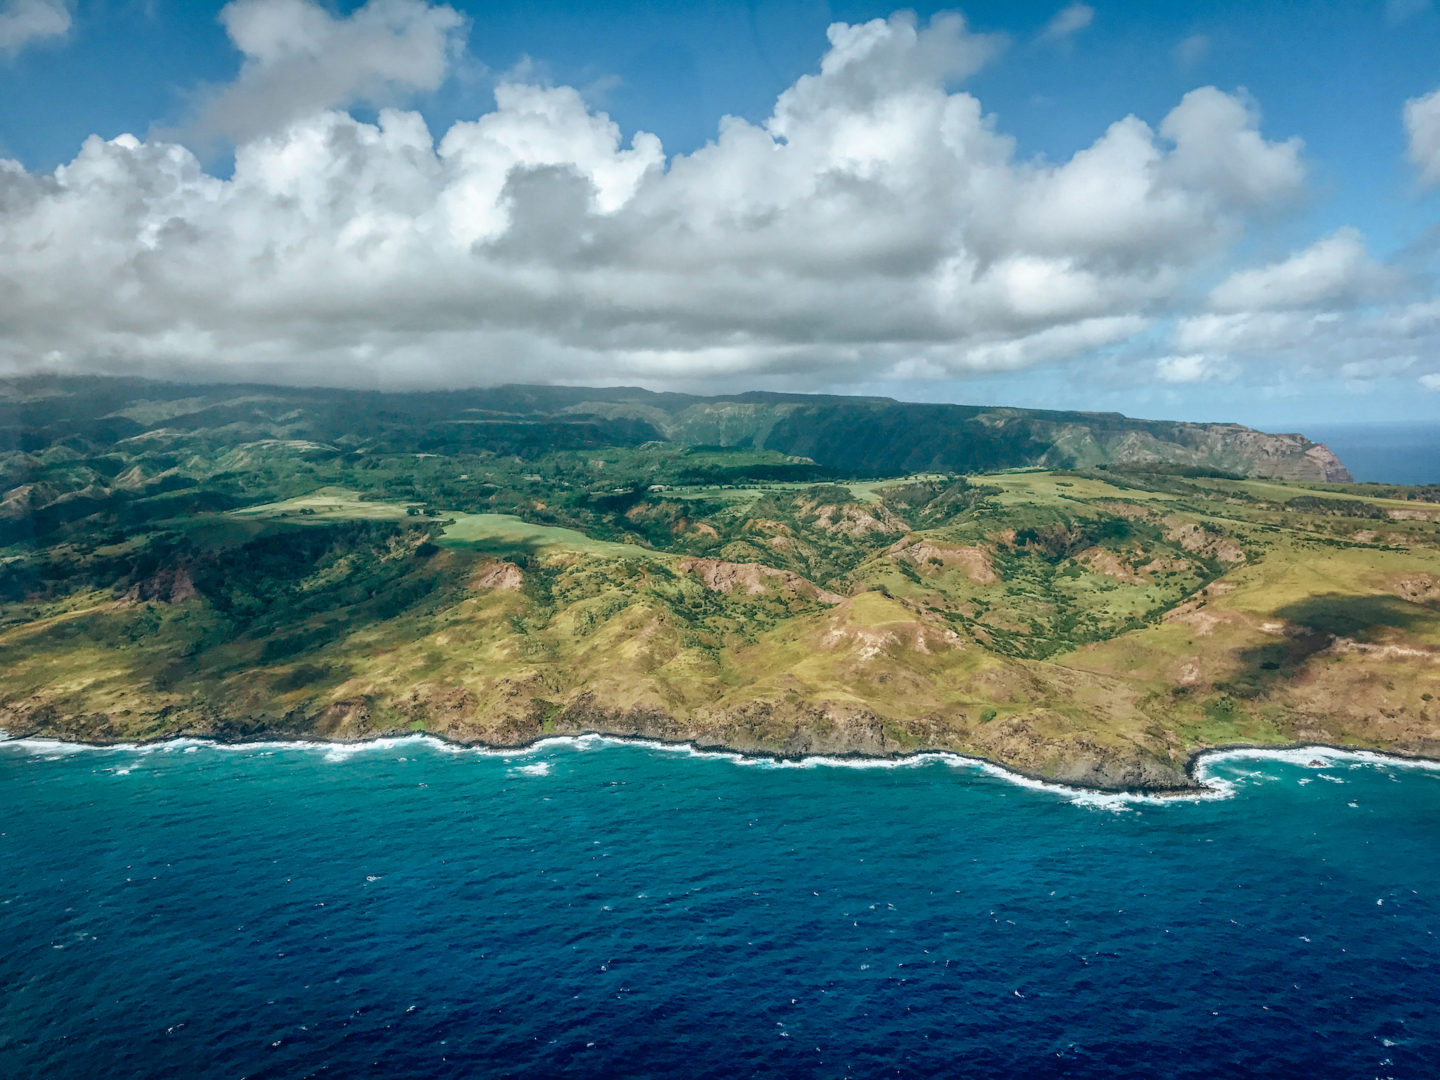 View of Molika'i Island from helicopter - Moloka'i Hawai'i